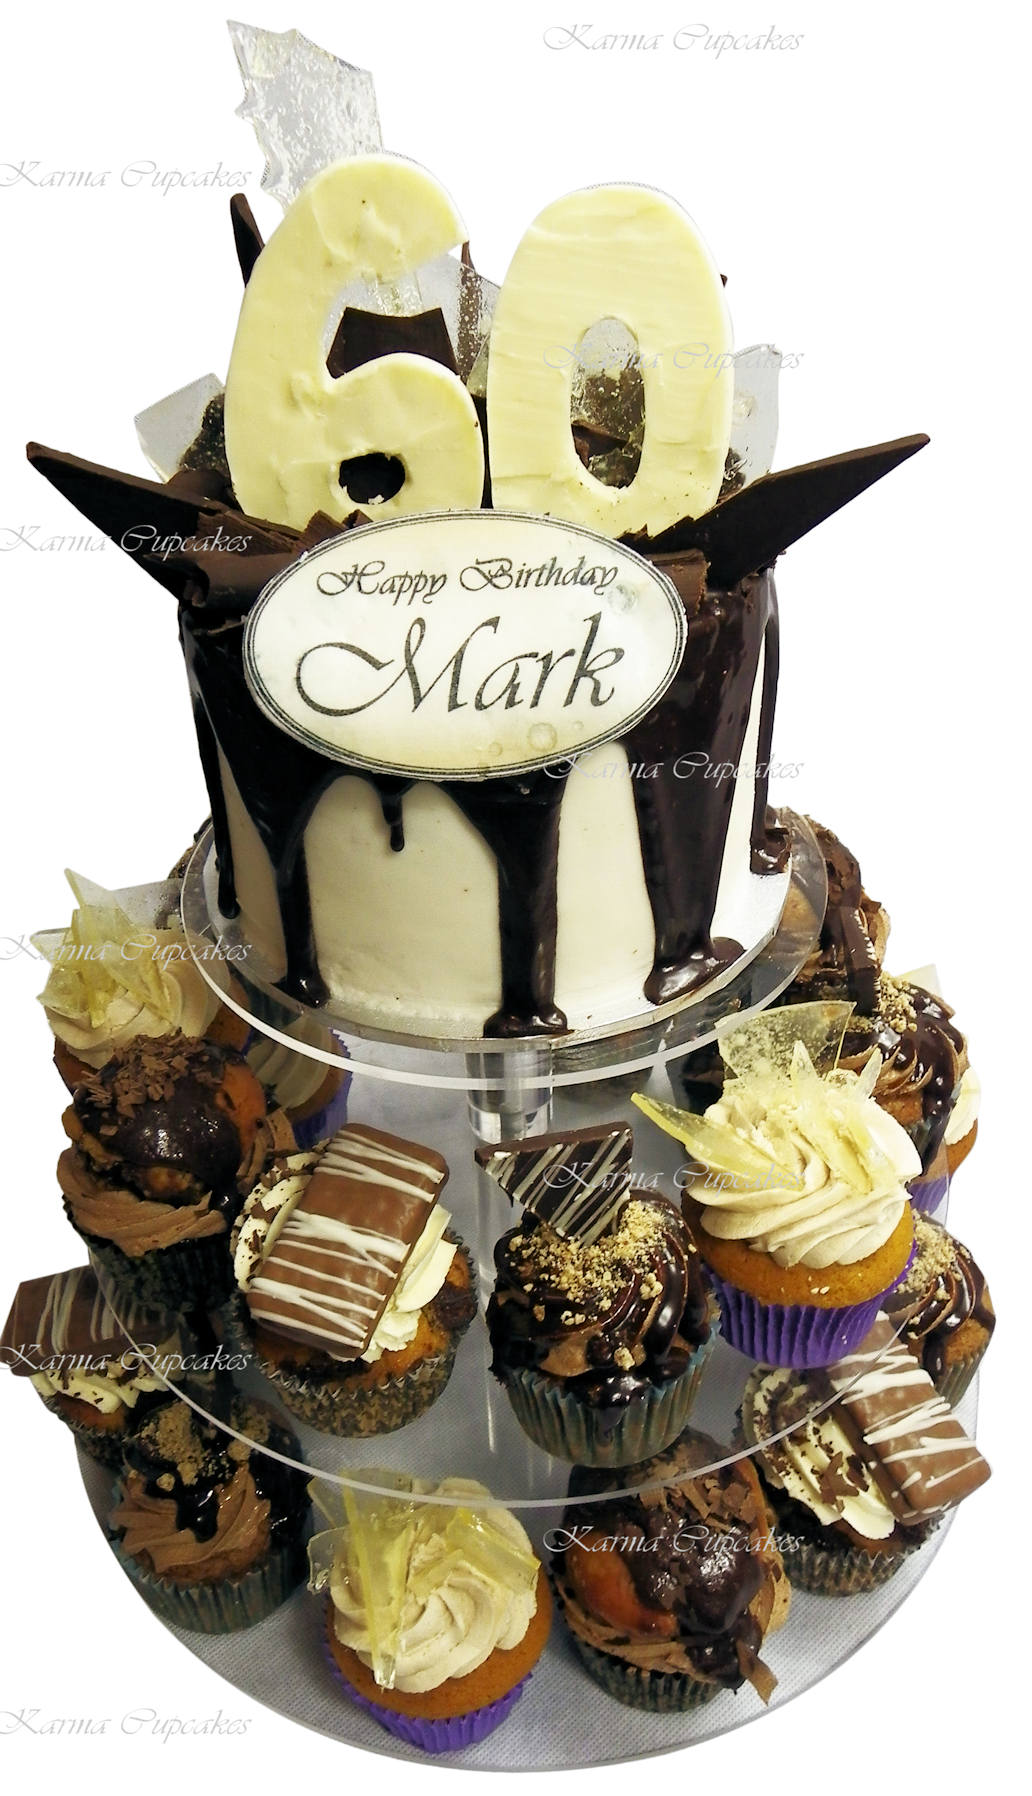 60th birthday tower with gourmet cupcakes - Karma Cupcakes